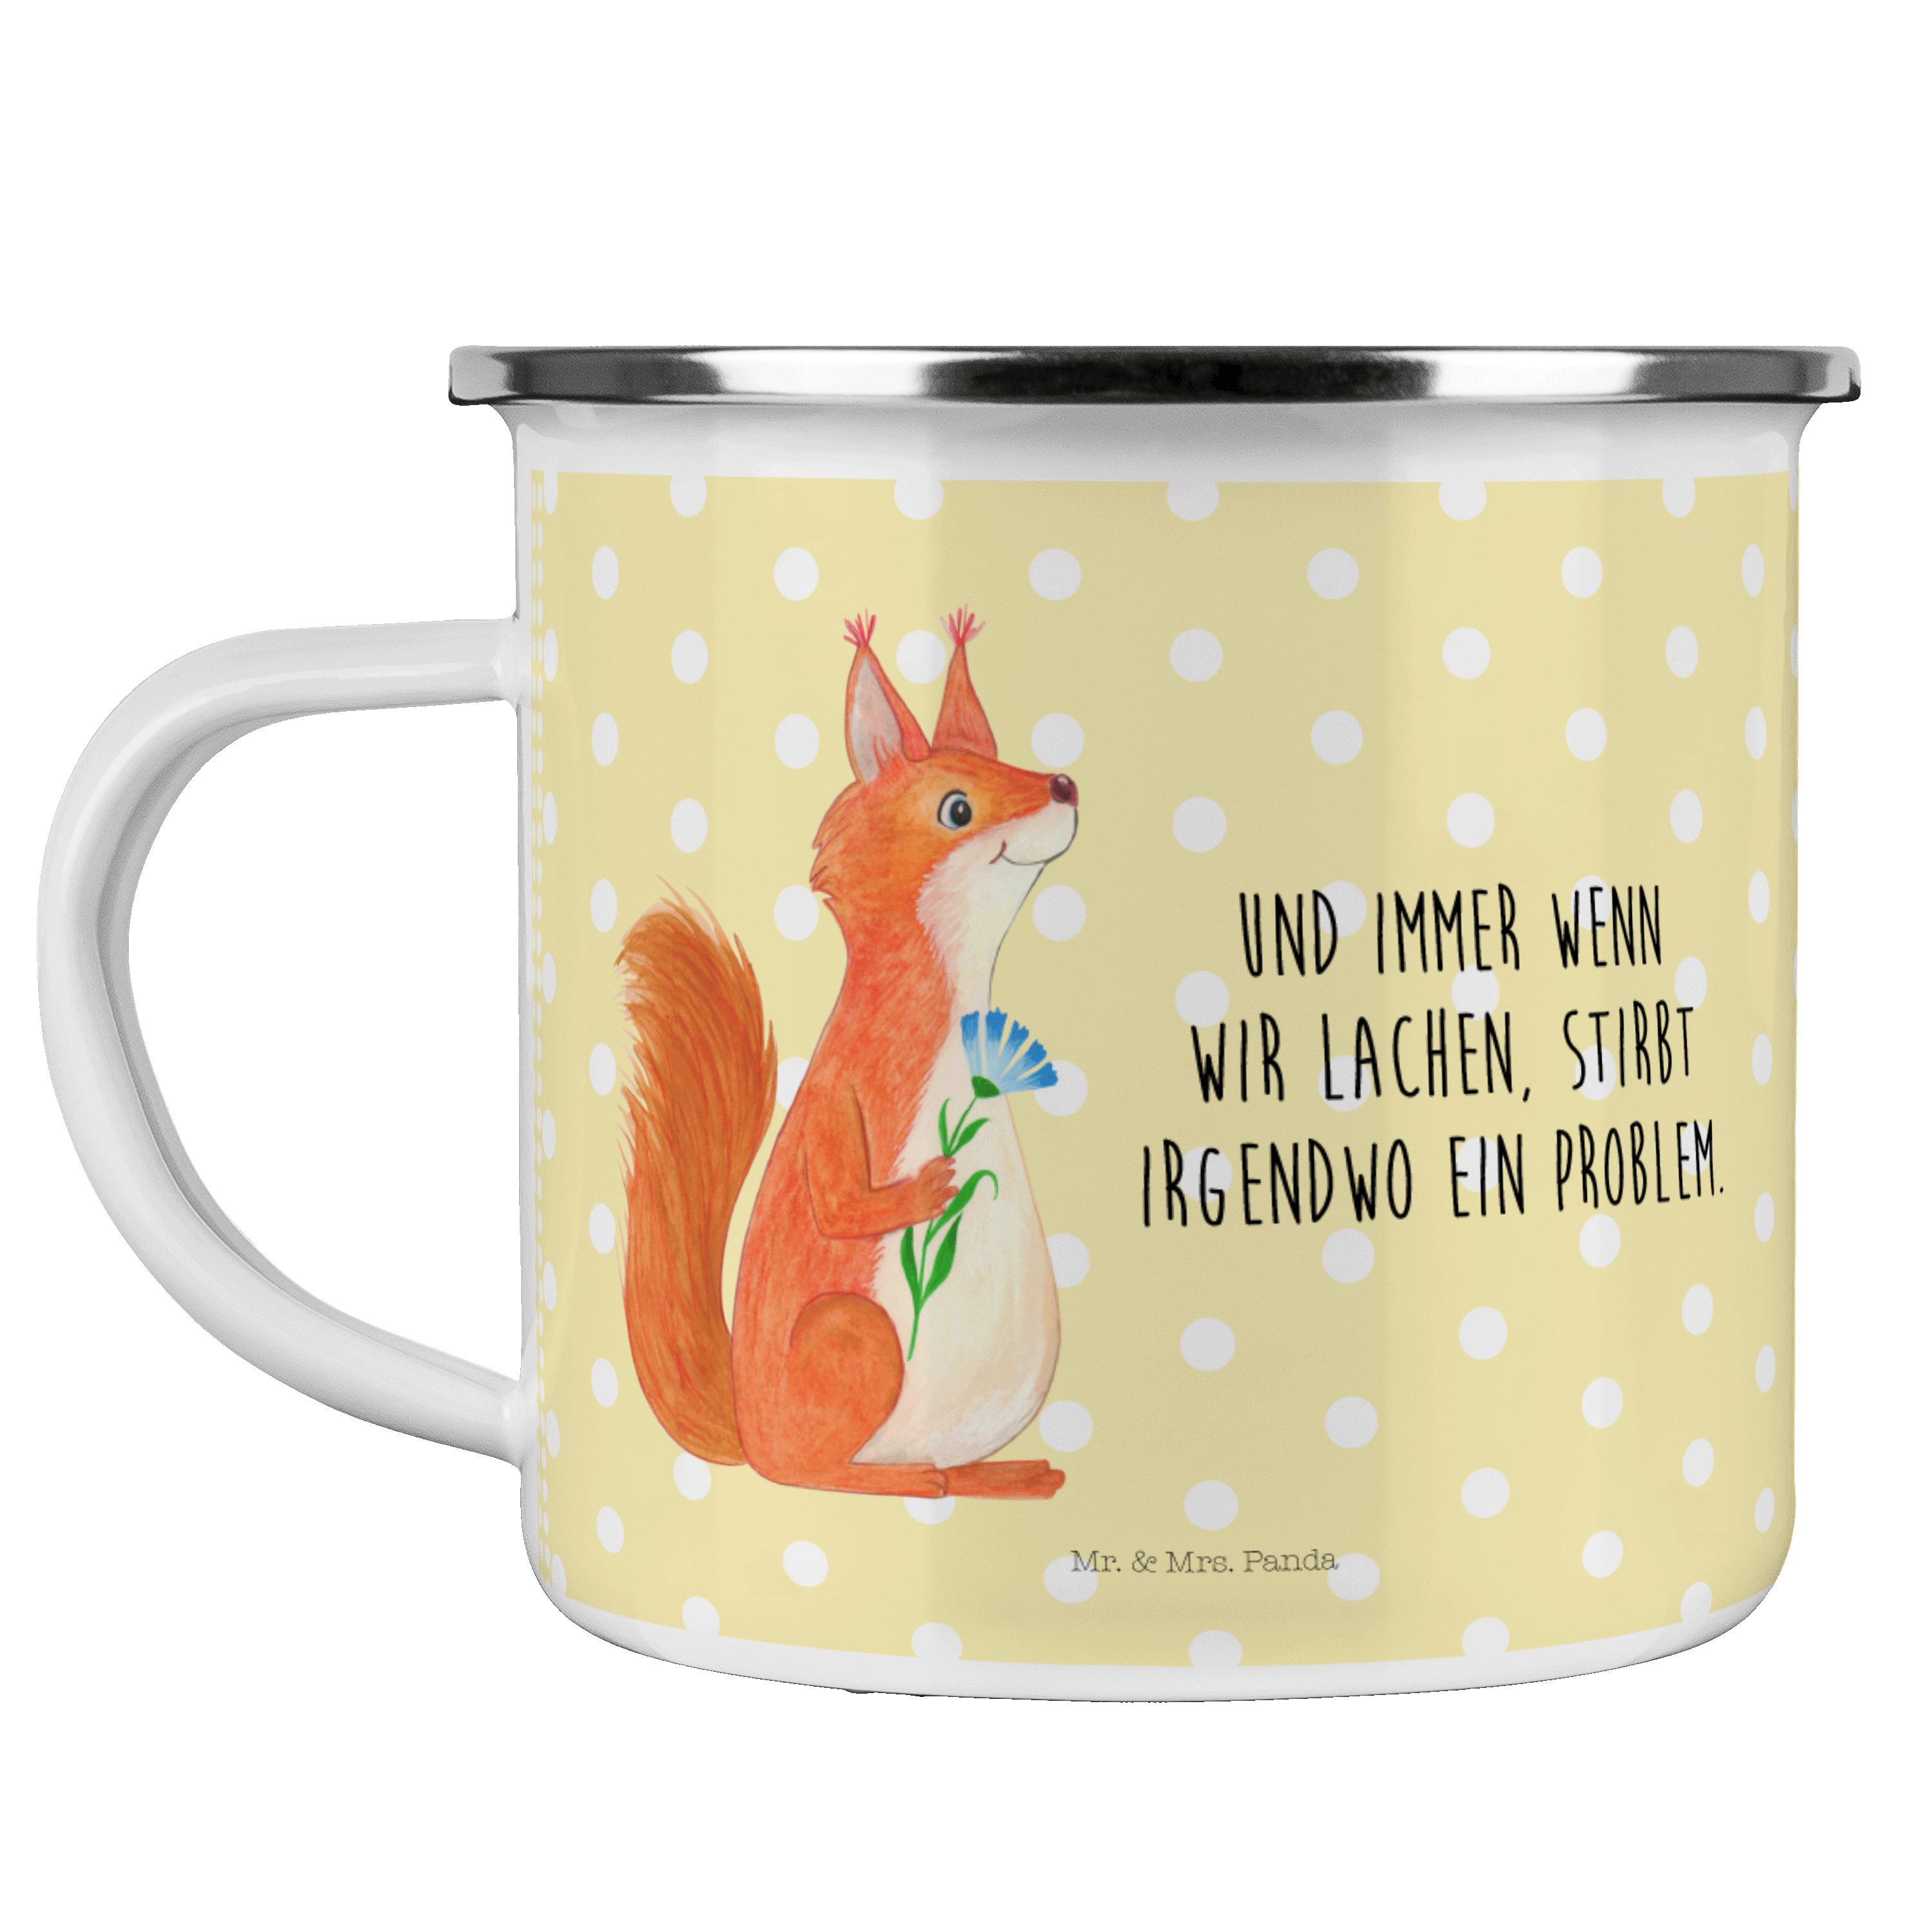 Mr. & Mrs. Panda Becher Eichhörnchen Blume - Gelb Pastell - Geschenk, Metalltasse für Camping, Emaille